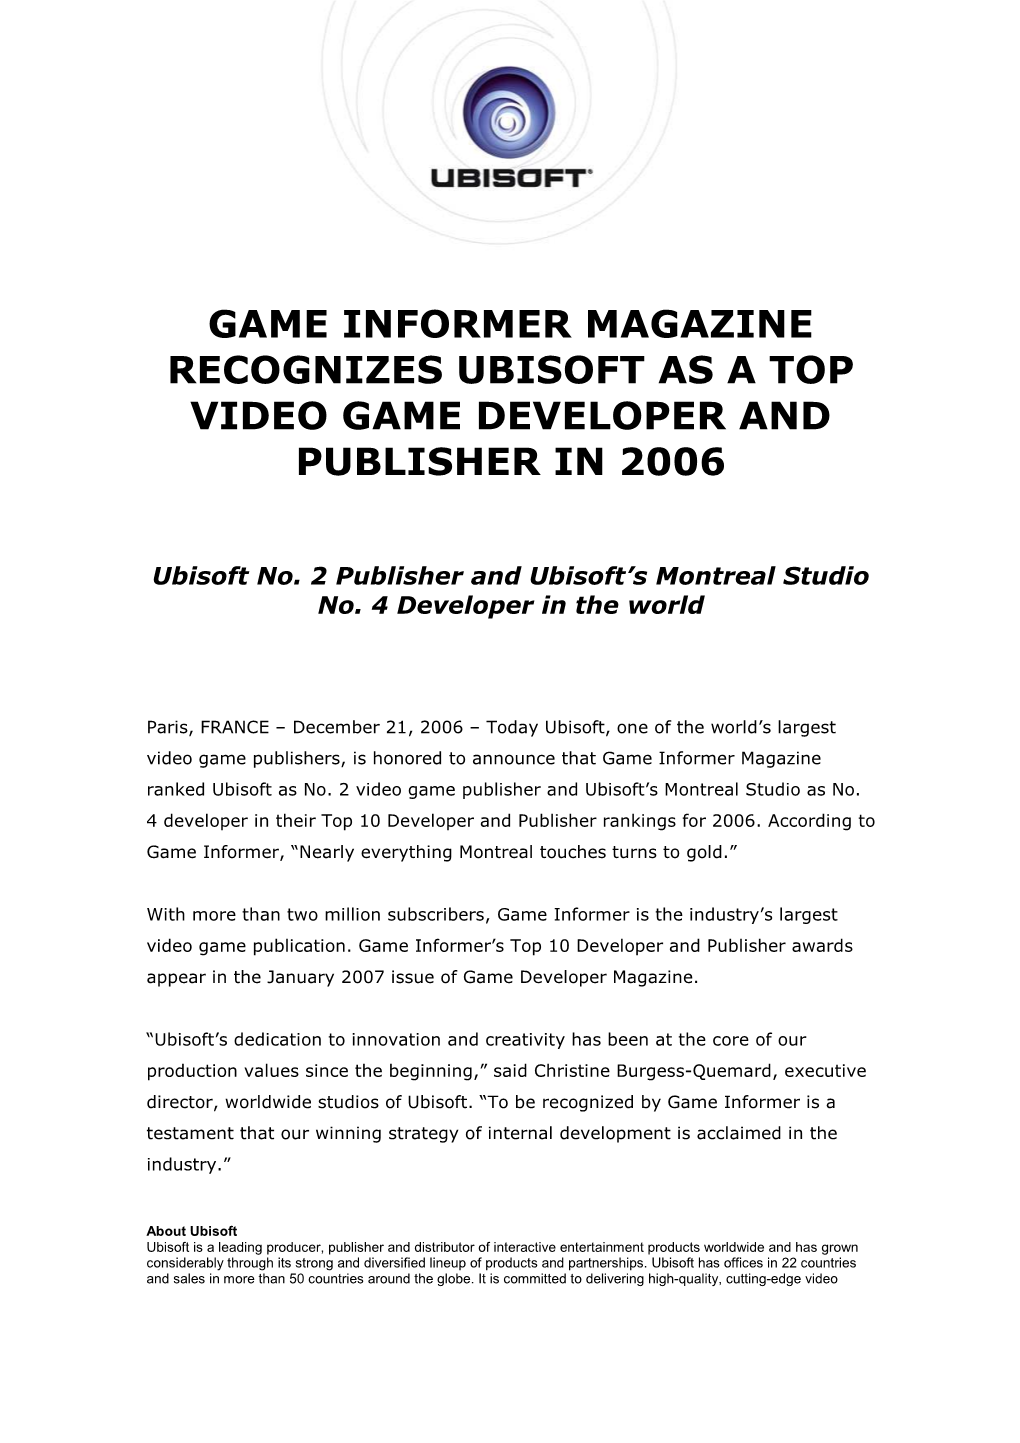 Ubisoft Game Informer Awards